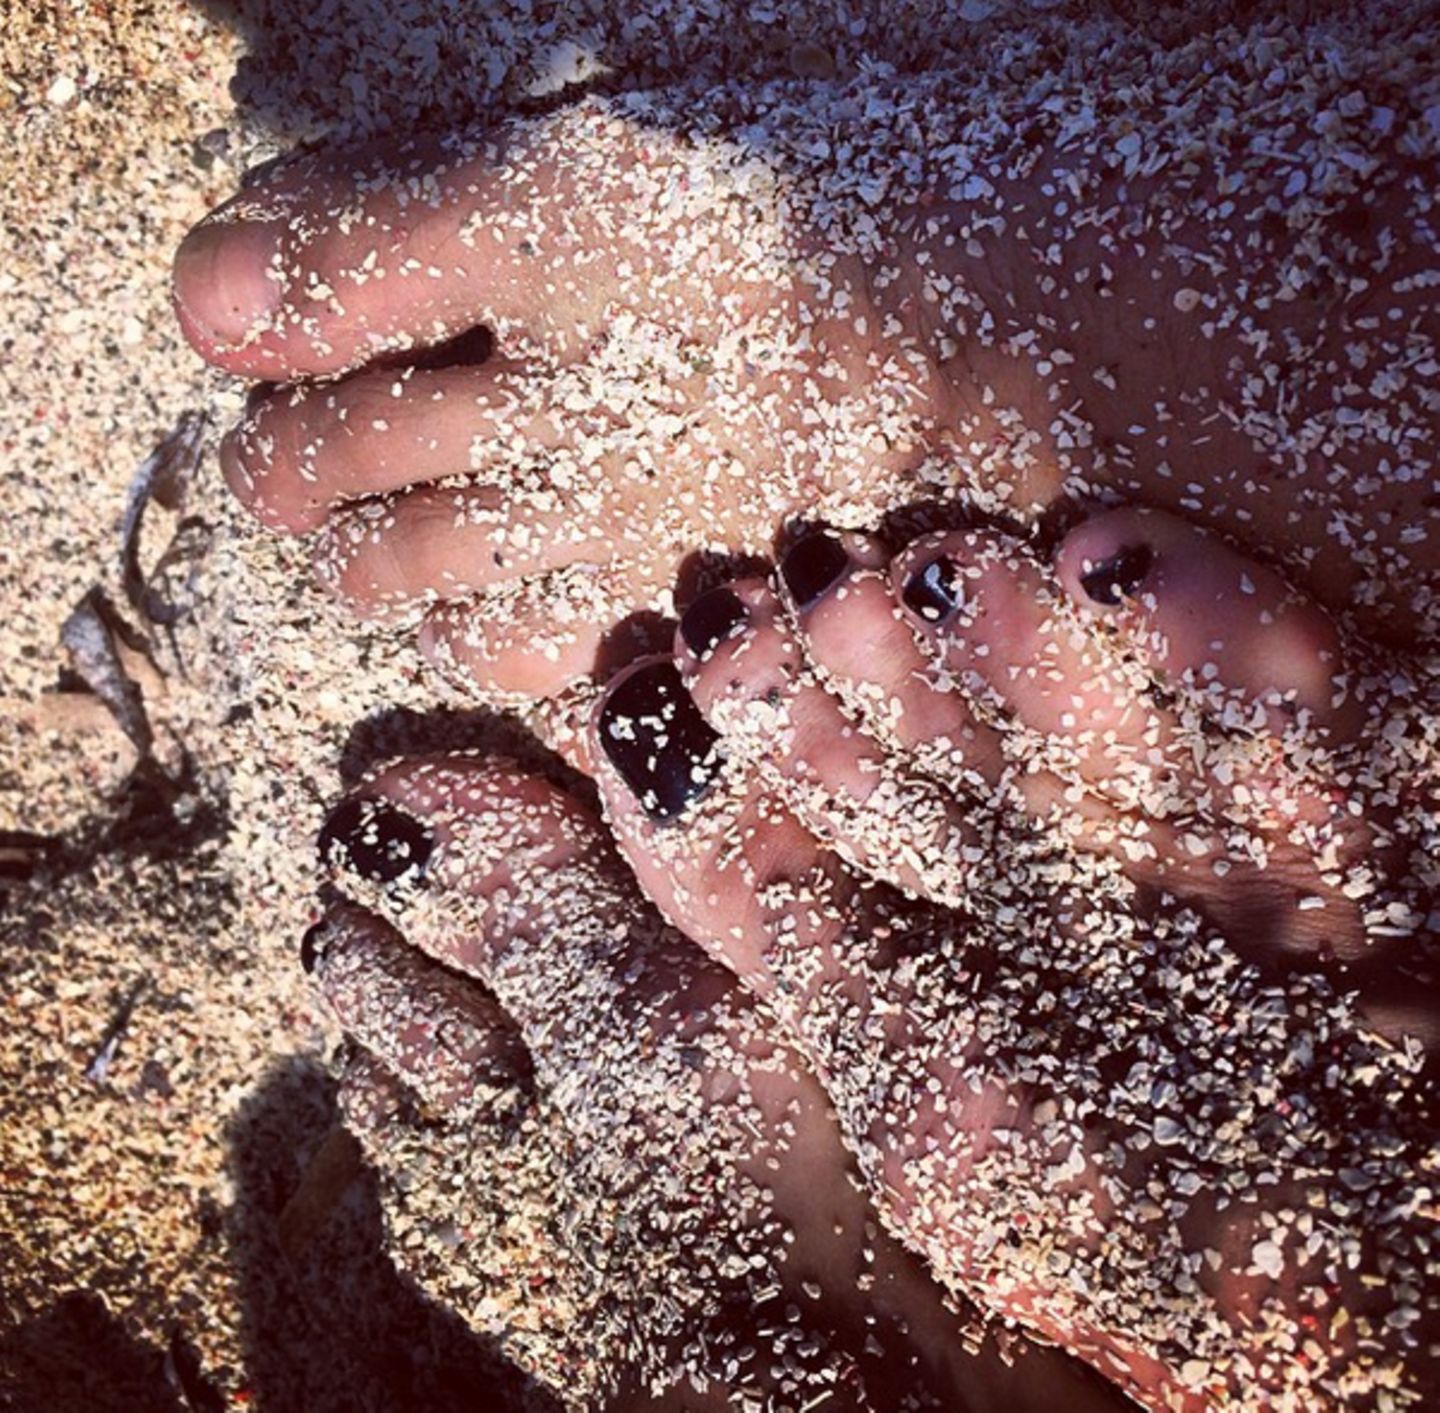 Macht Heidi Klum gerade mit ihrem Vito Urlaub am Strand? Zu diesem Foto schreibt sie: "Ein unglaubliches Jahr geht zu Ende. Wünsche allen ein frohes und gesundes 2015."